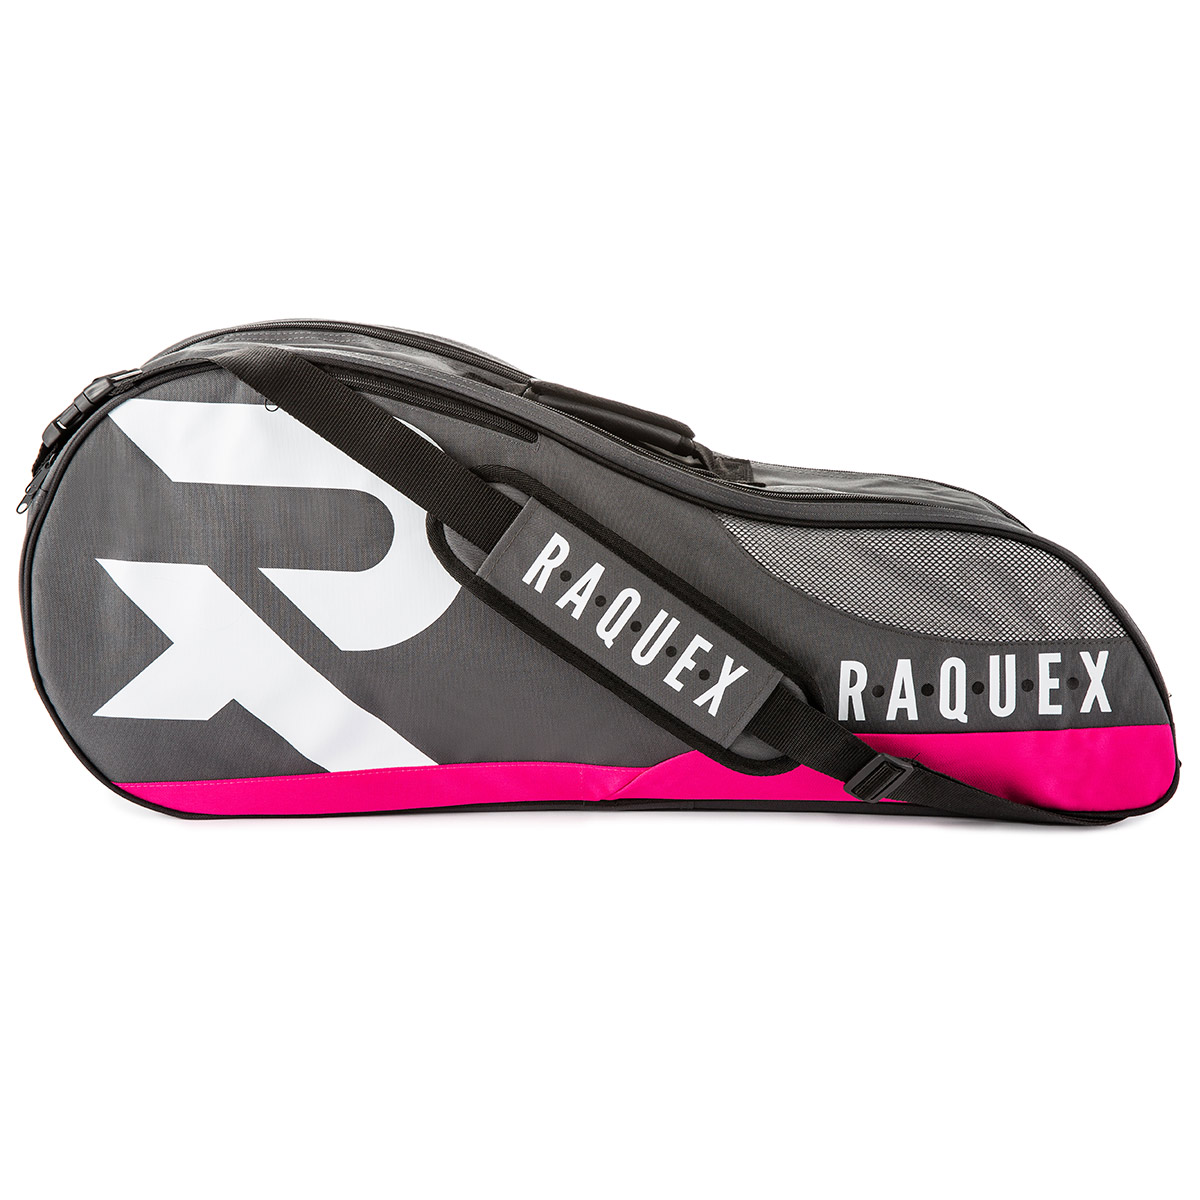 Raquex racquet bag in pink